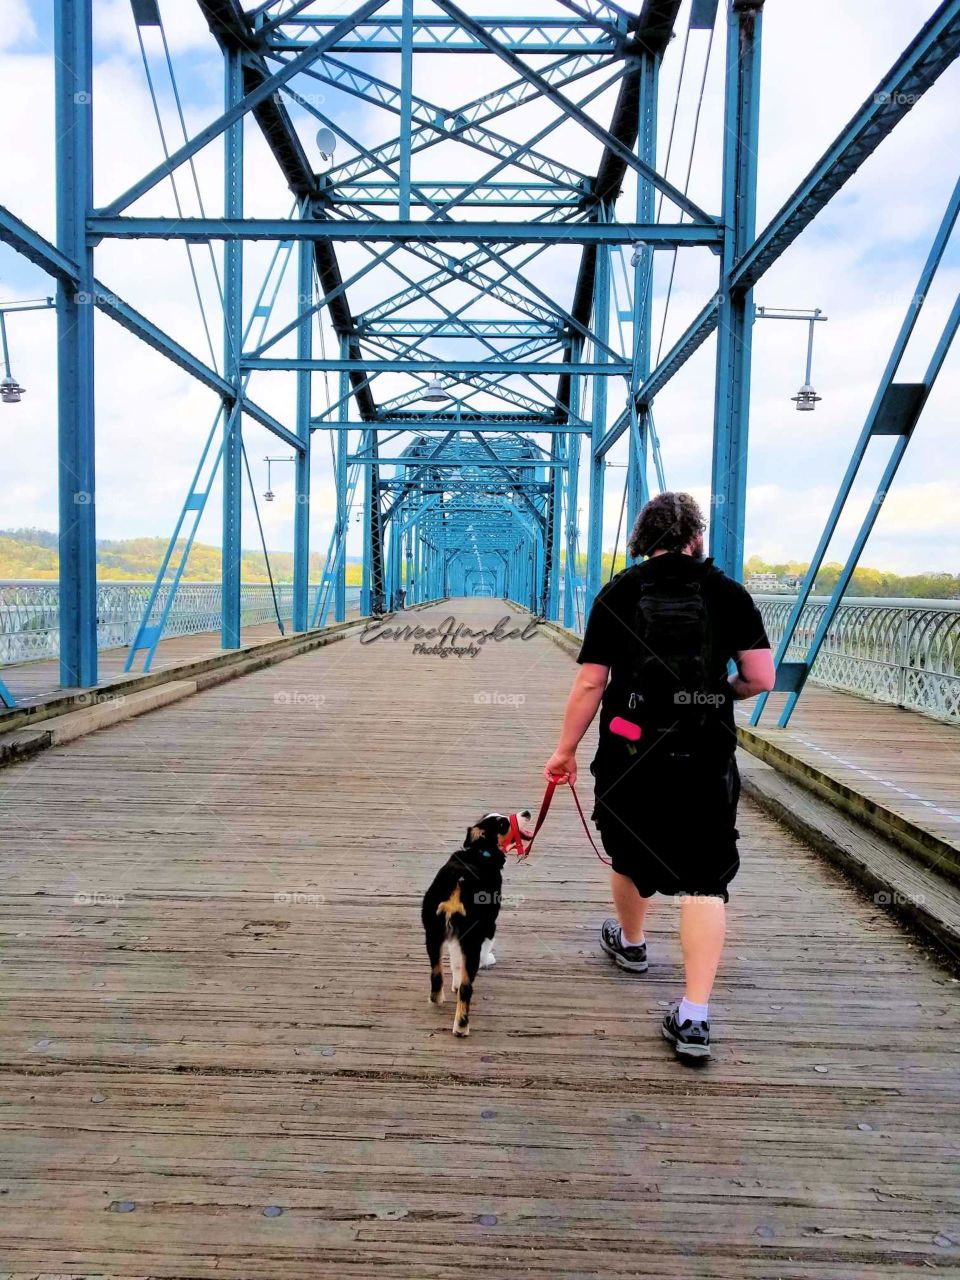 A walk down the Walnut Bridge with his best friend.